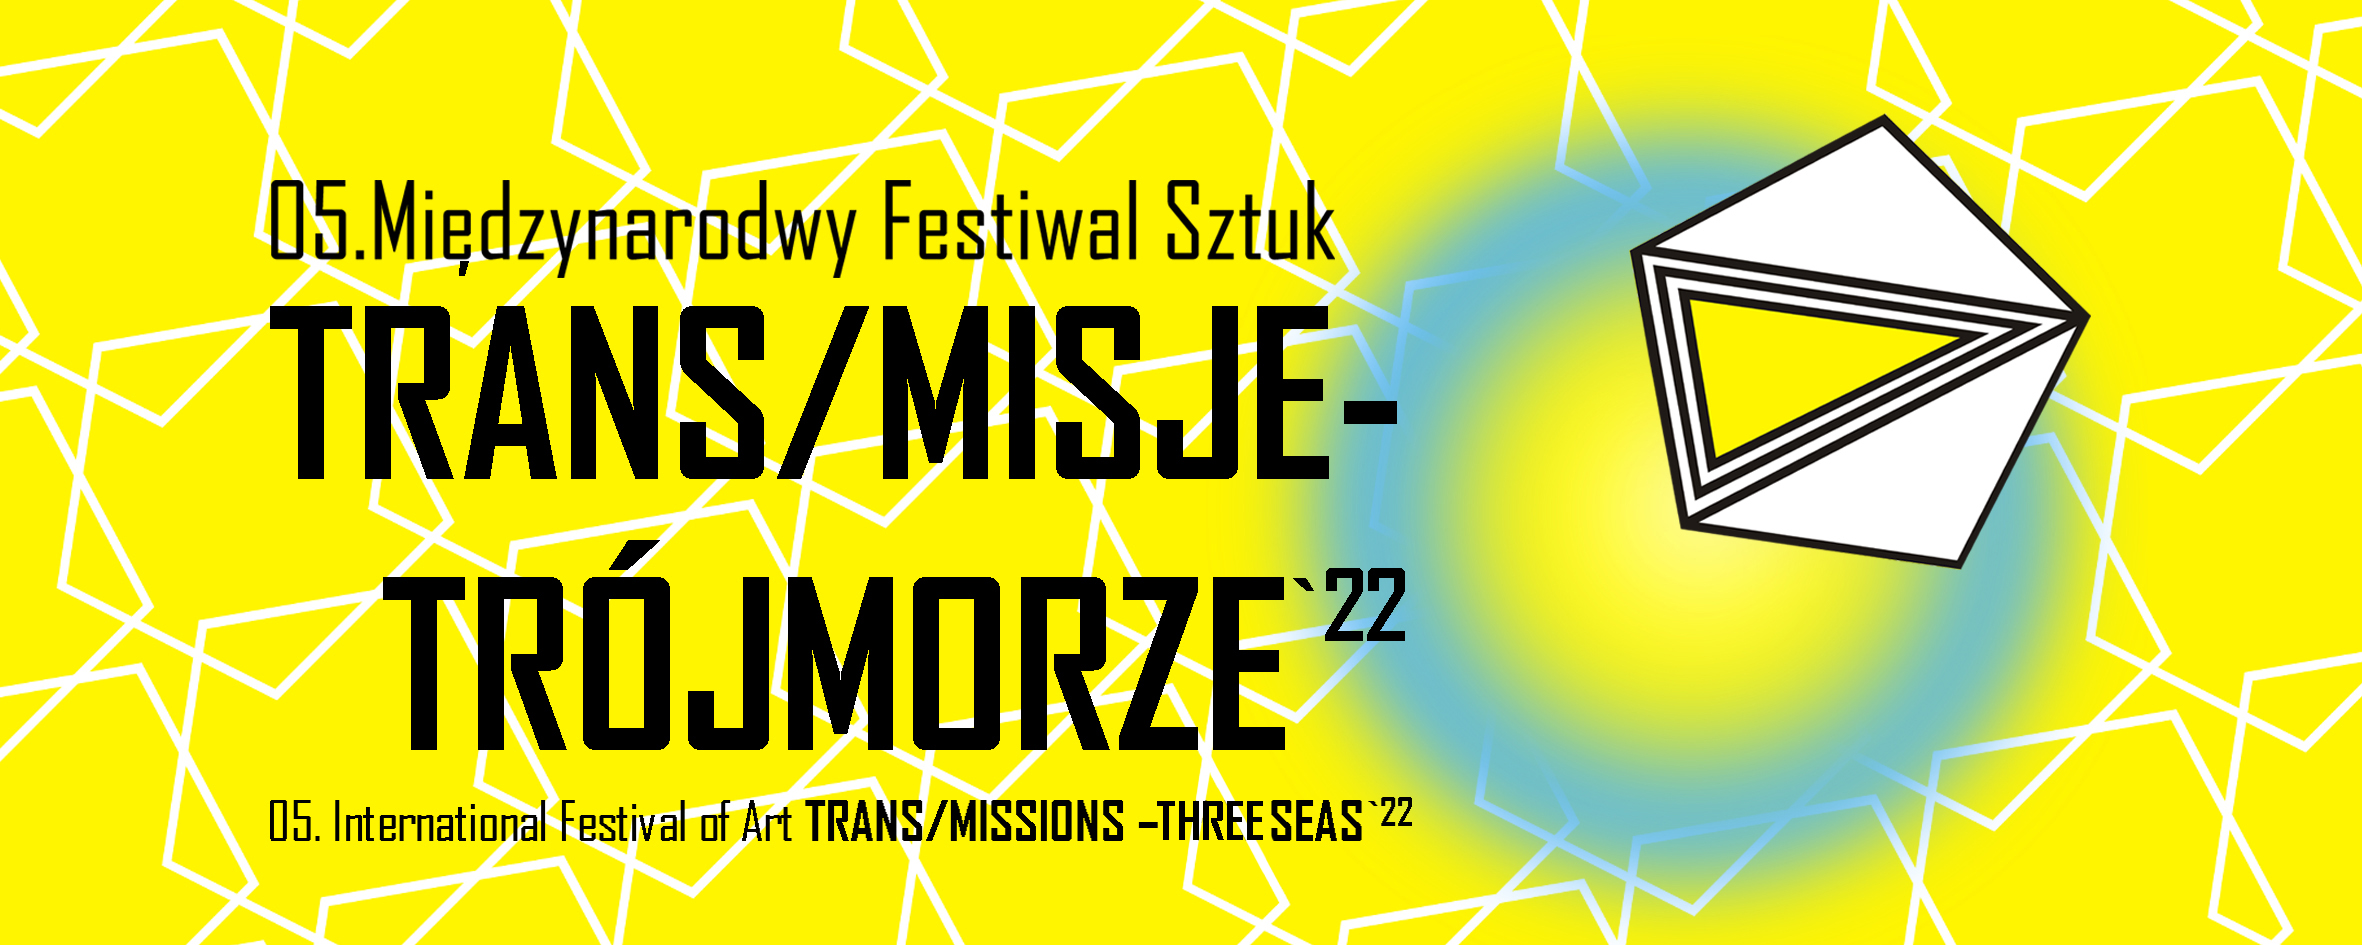 05. Międzynarodowy Festiwal TRANS/MISJE - Trójmorze`22